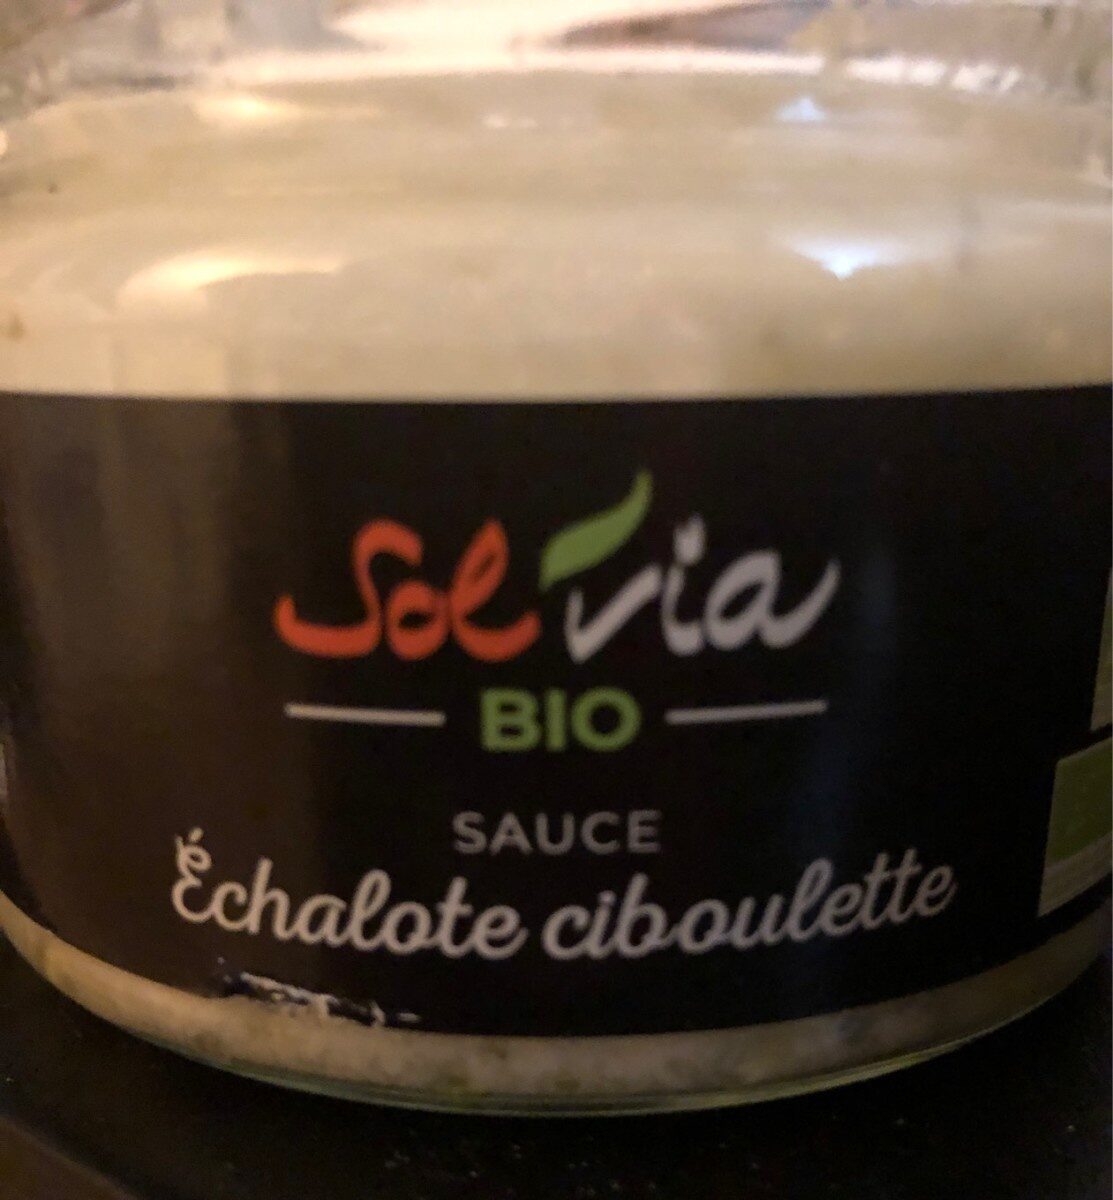 Sauce échalote ciboulette - Product - fr